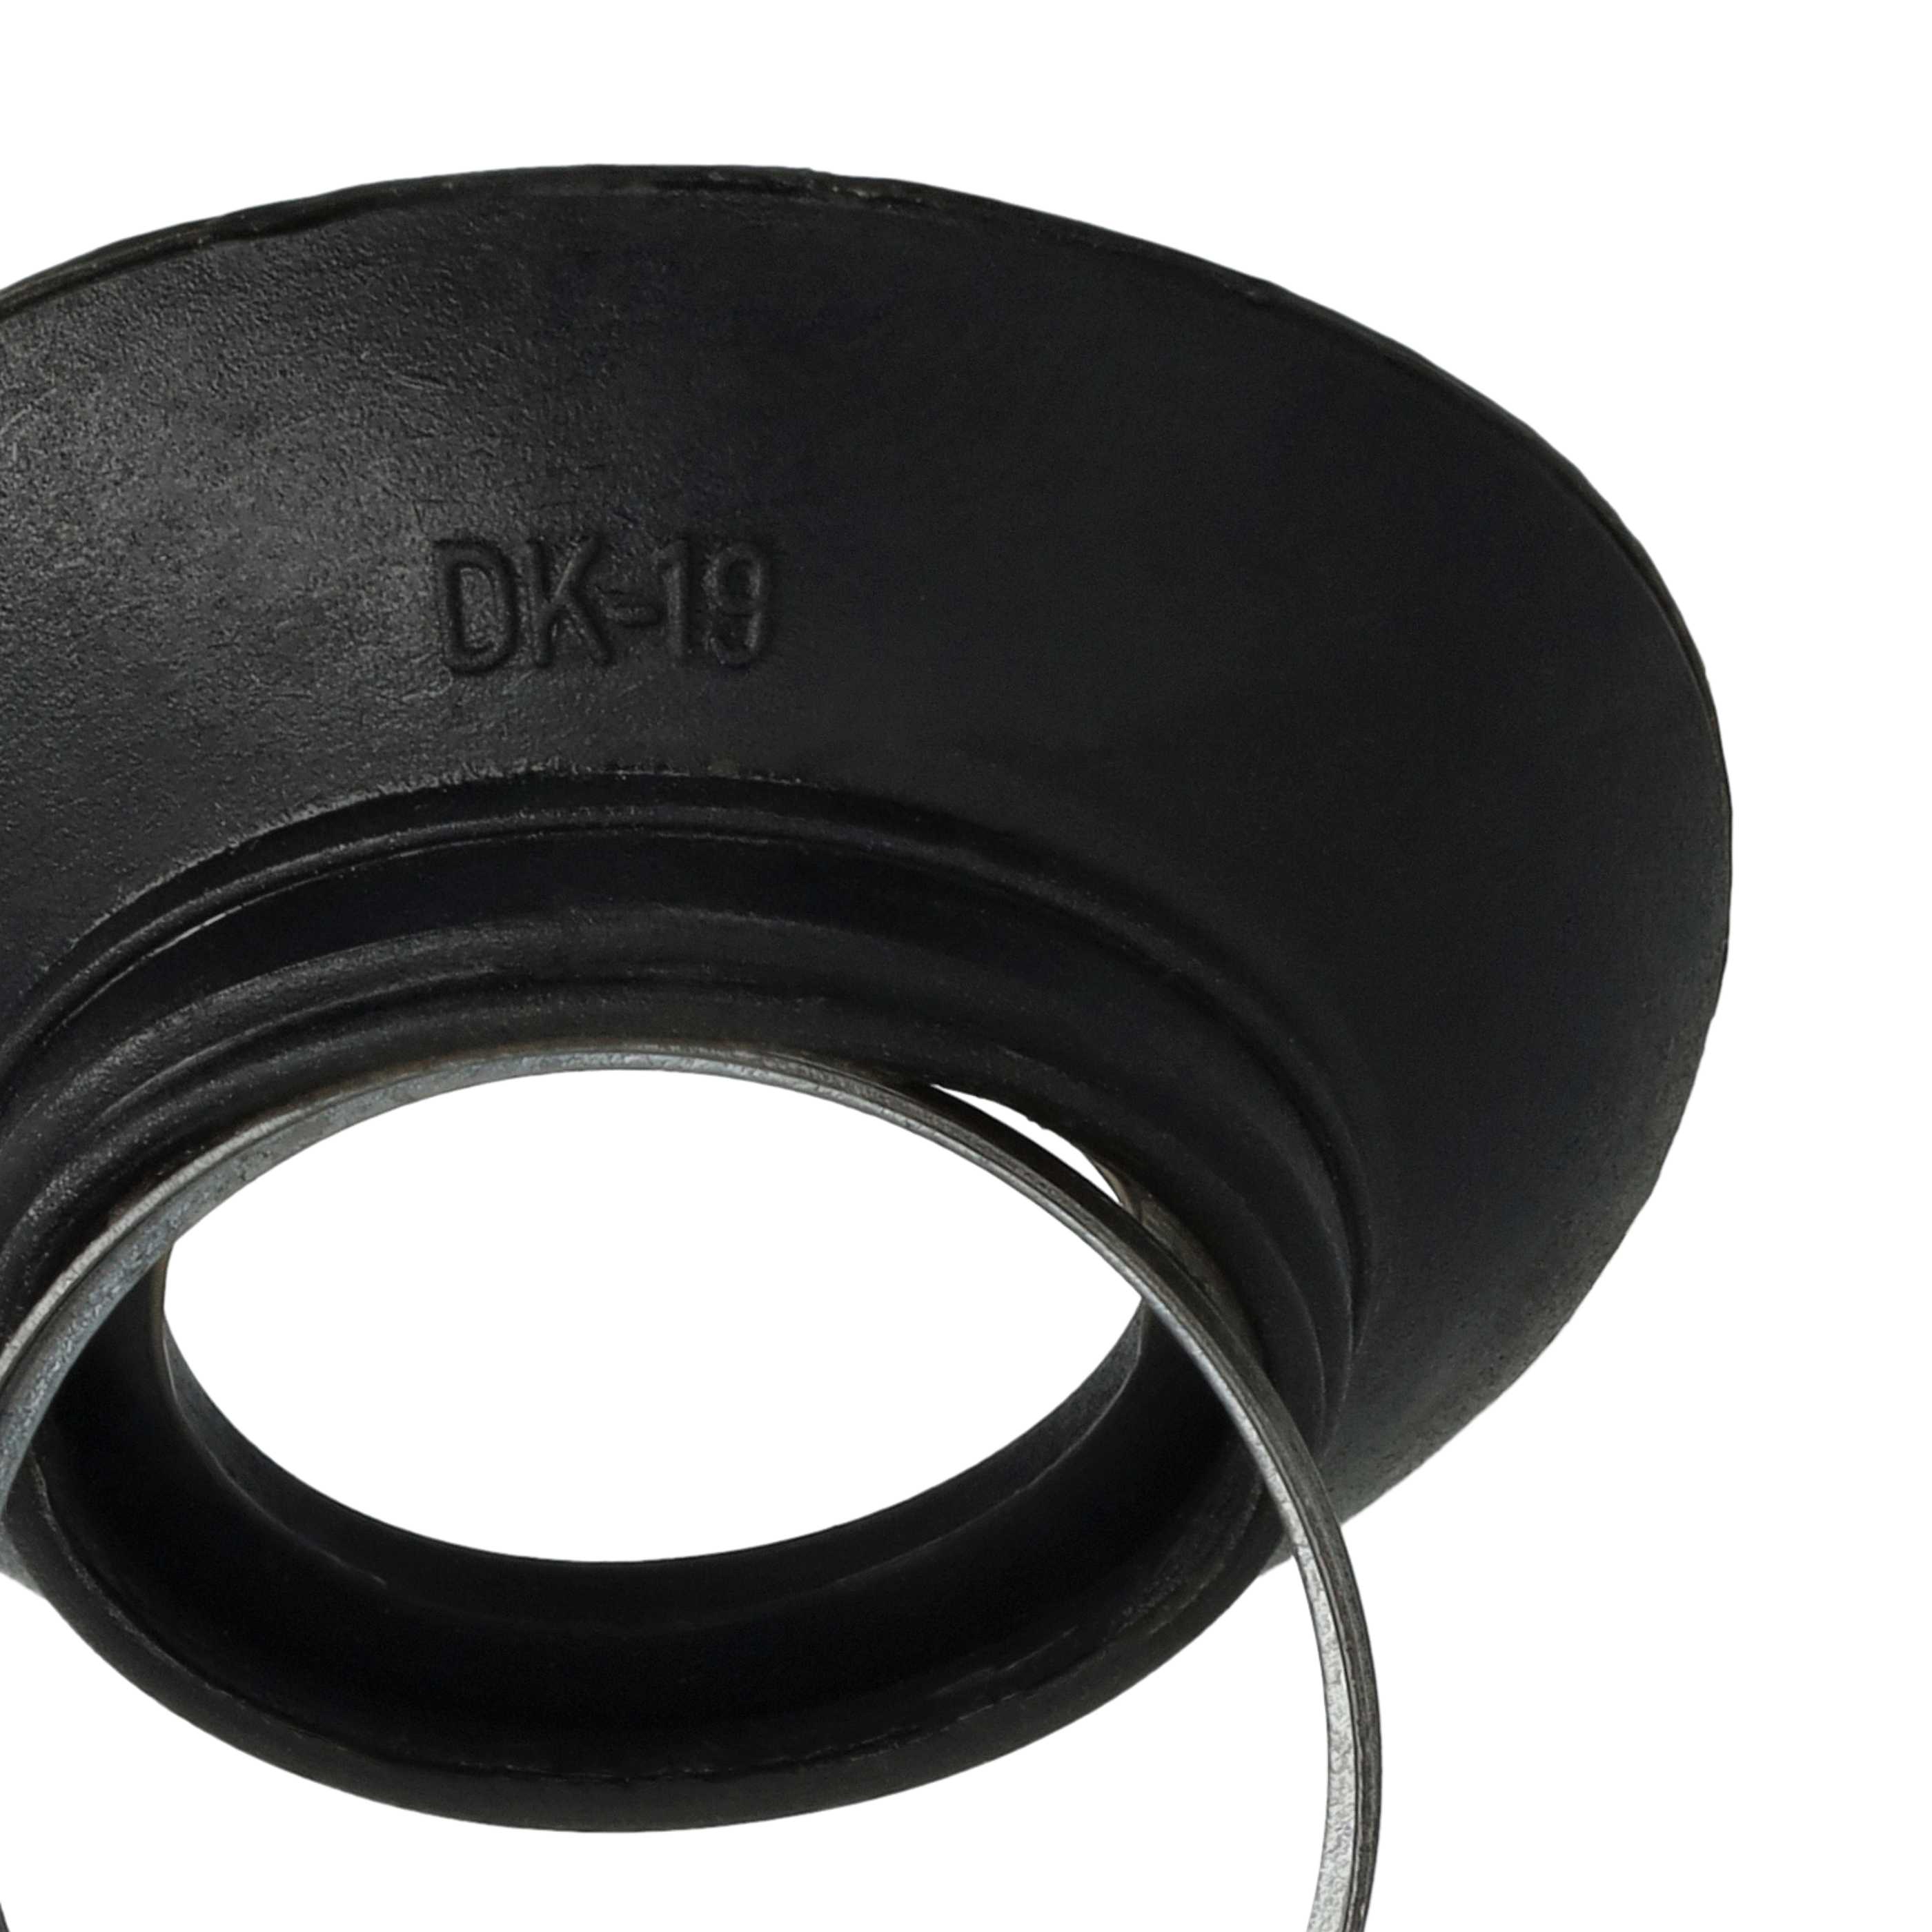 Conchiglia oculare sostituisce Nikon DK-19 compatibile con D810a Nikon - plastica